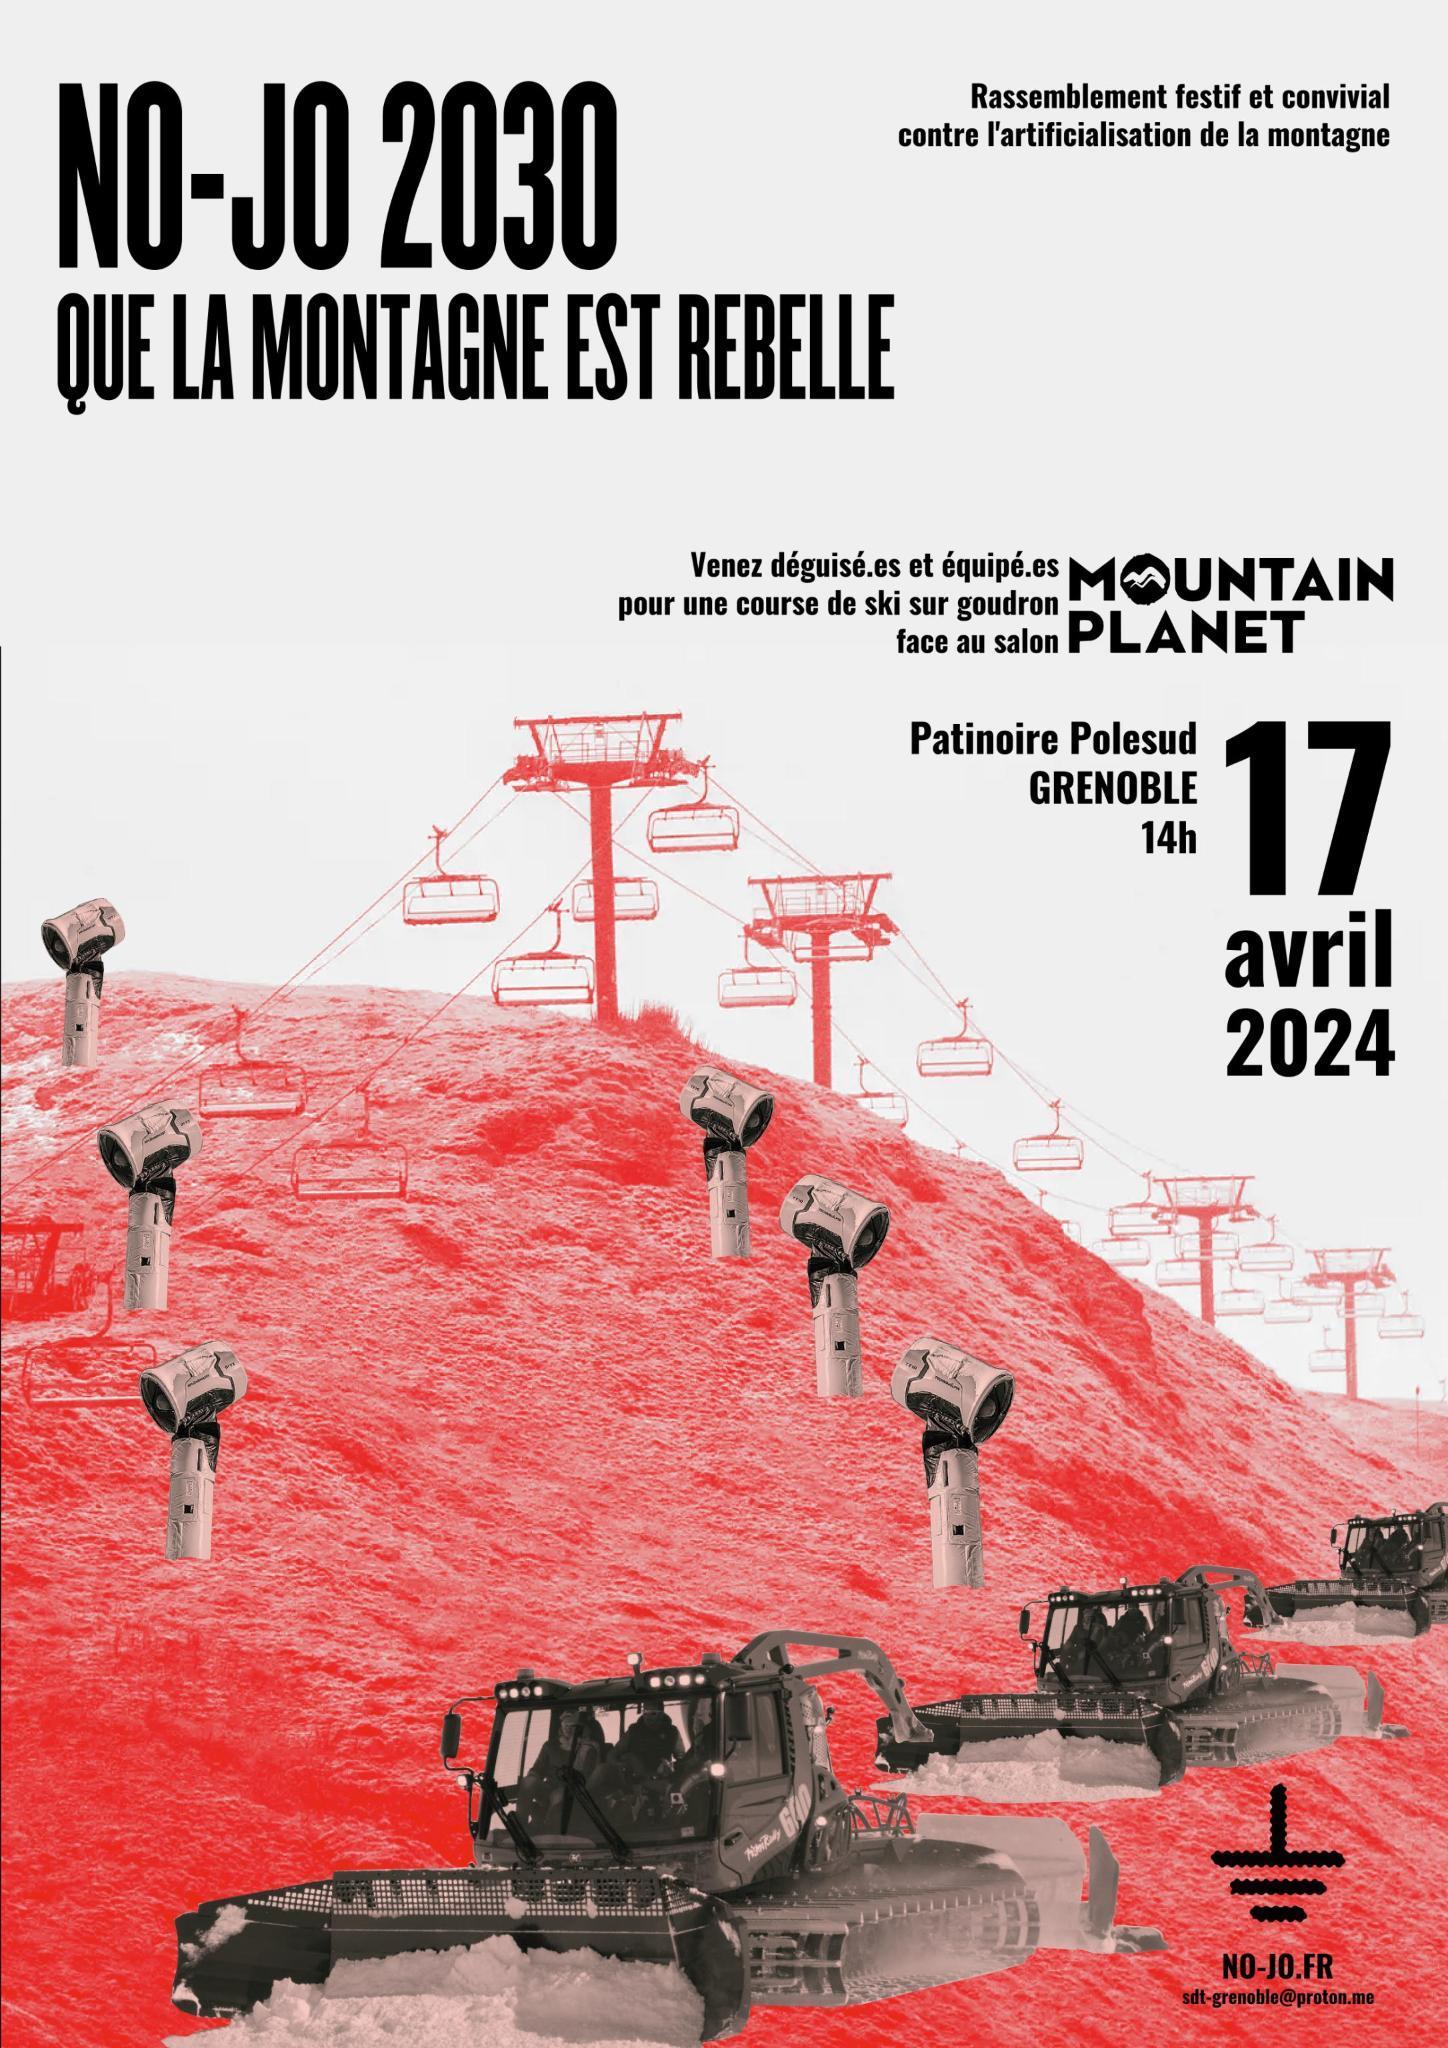 Mobilisation en réaction au salon Mountain Planet à Grenoble